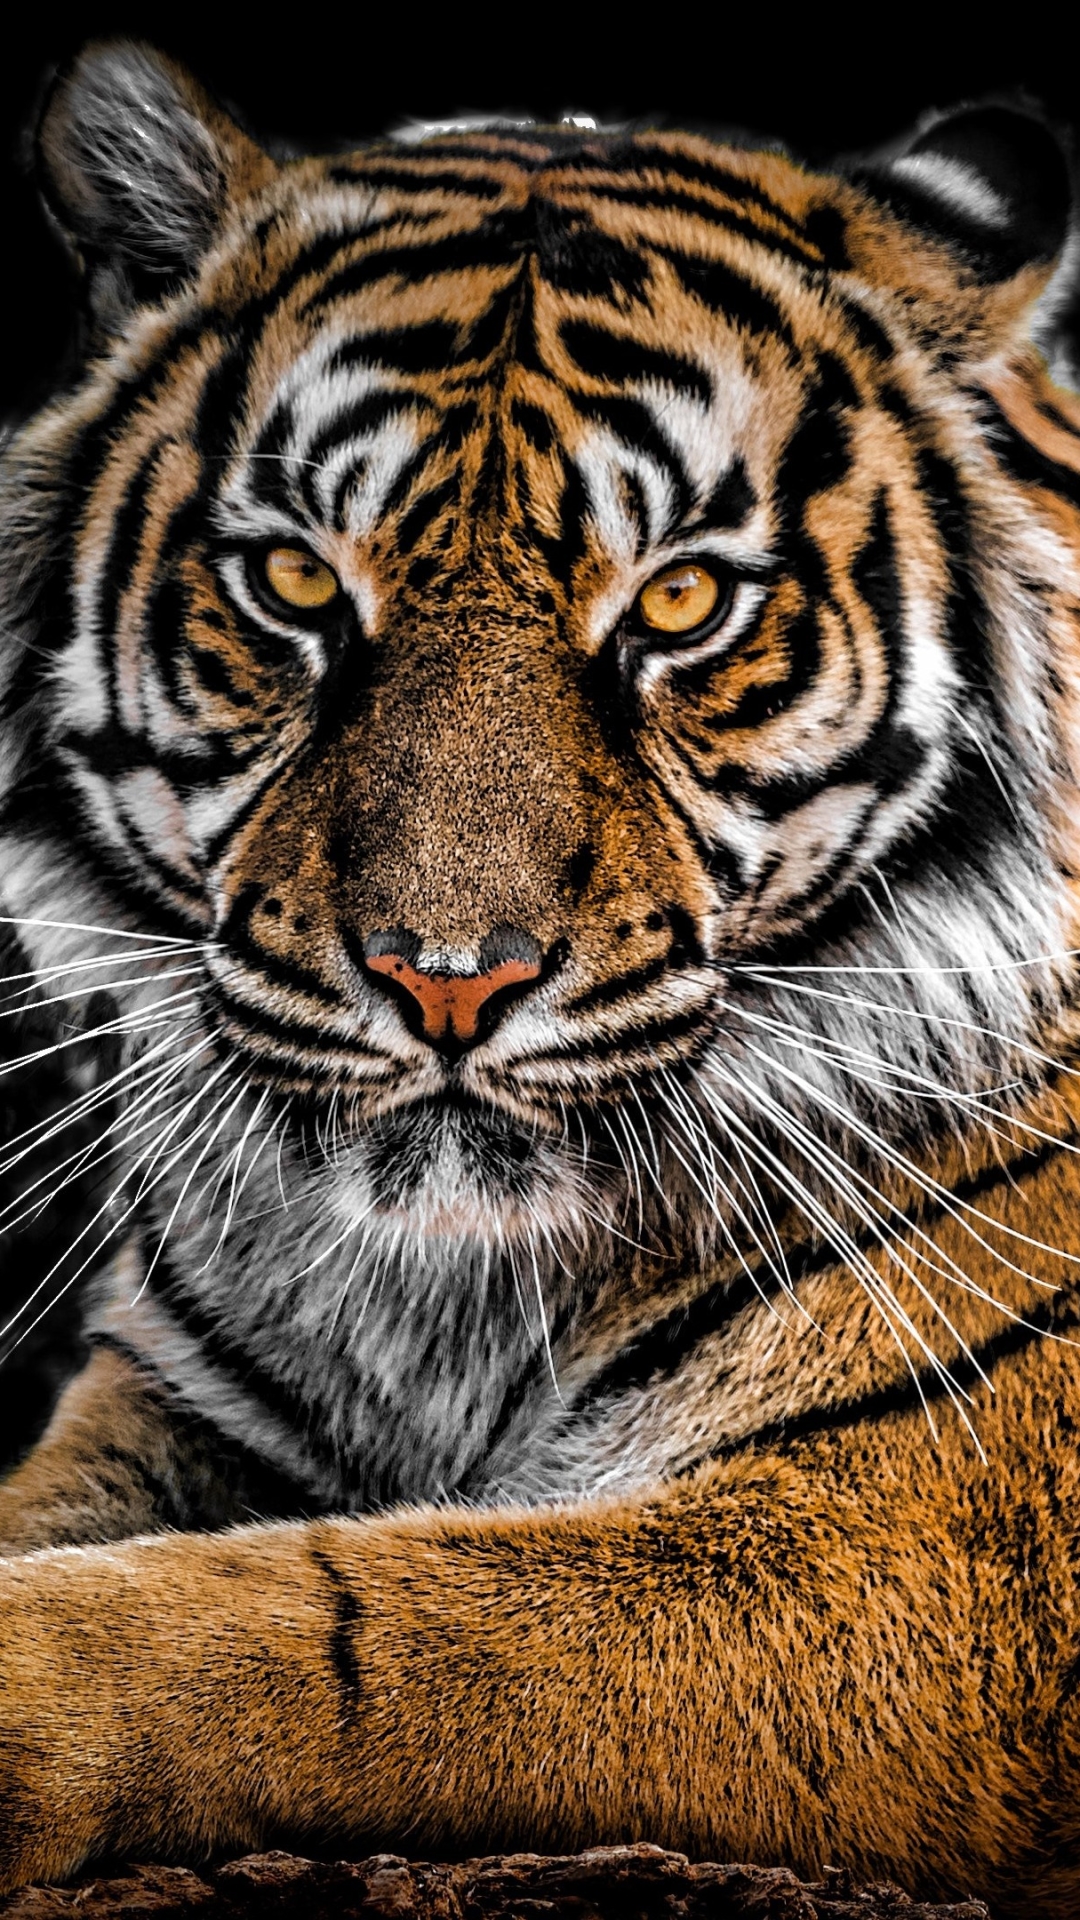 Скачать картинку Животные, Тигр, Кошки, Сибирский Тигр в телефон бесплатно.